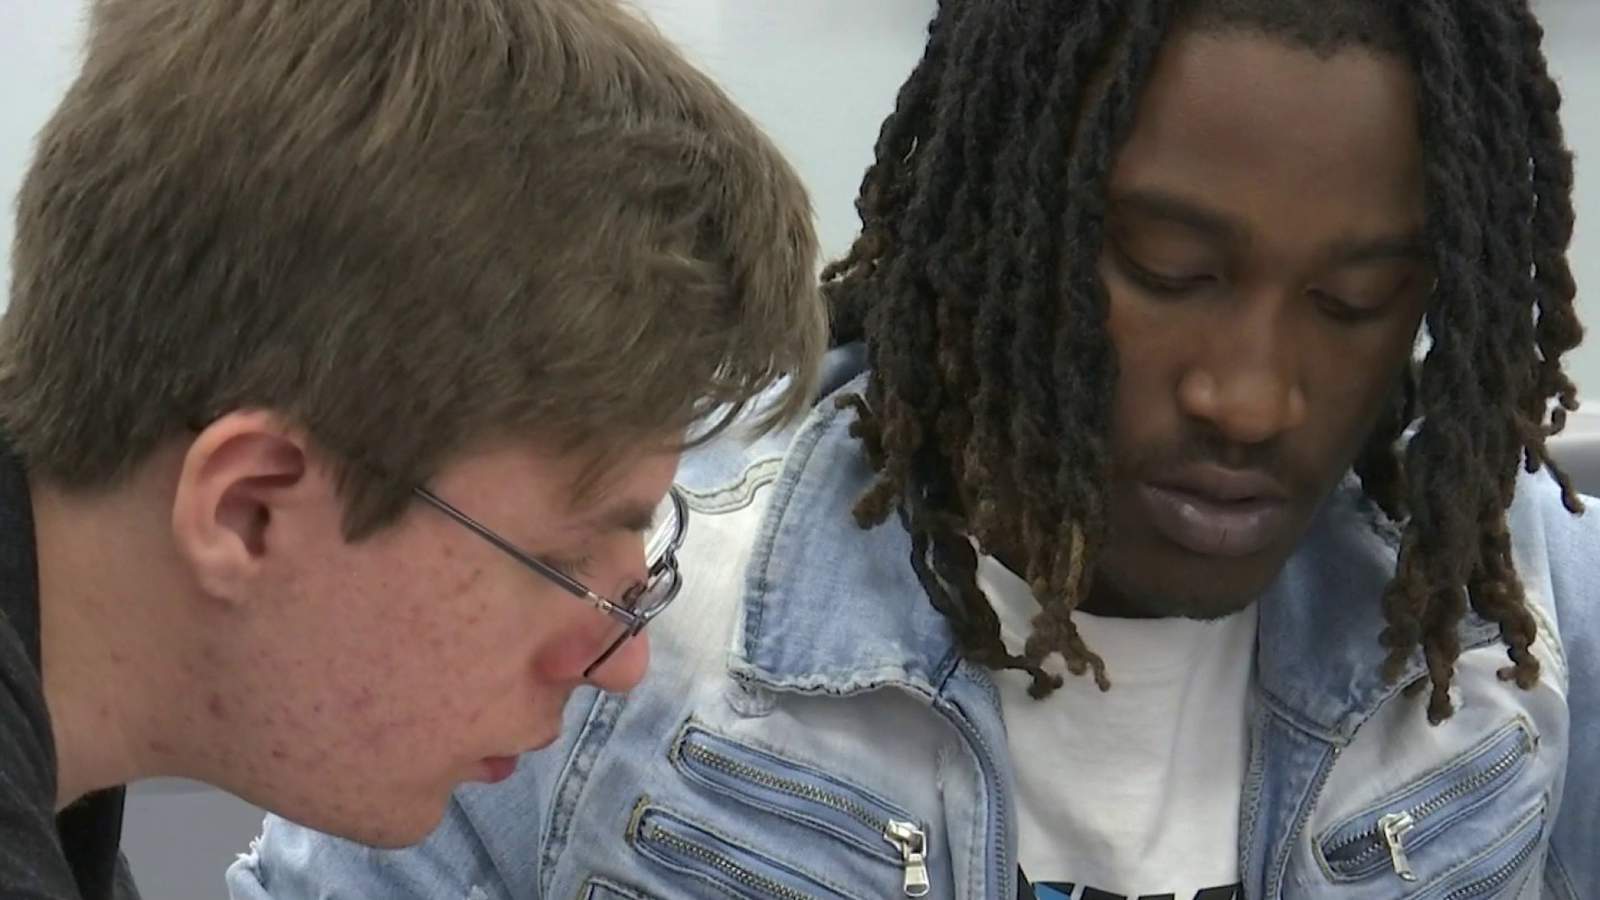 Tutoring program helps teens get diplomas